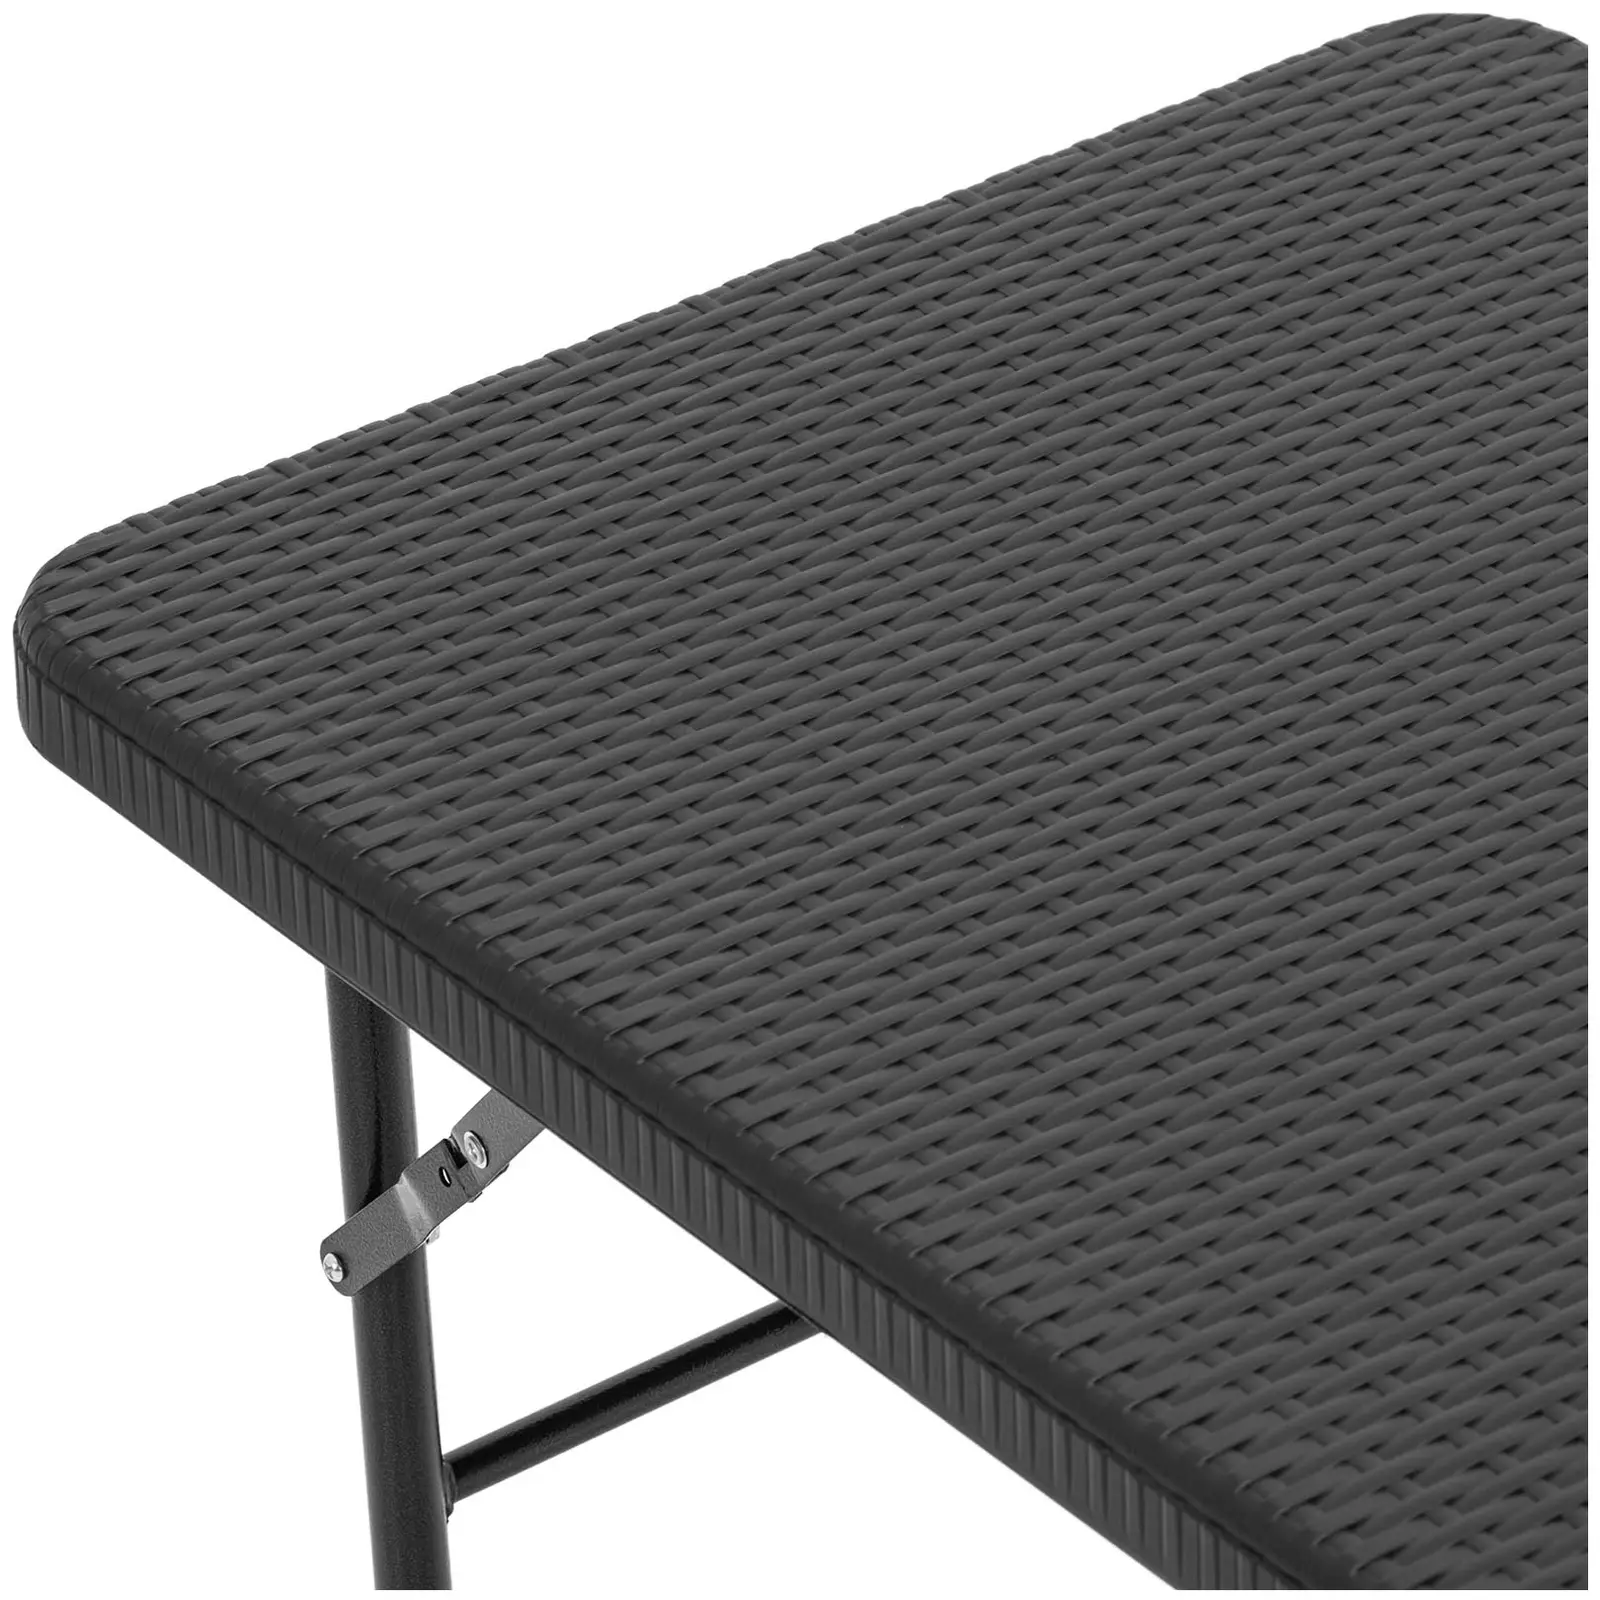 Összecsukható asztal - 121,60 x 61,50 x 73,50 cm - bel-/kültéri - fekete